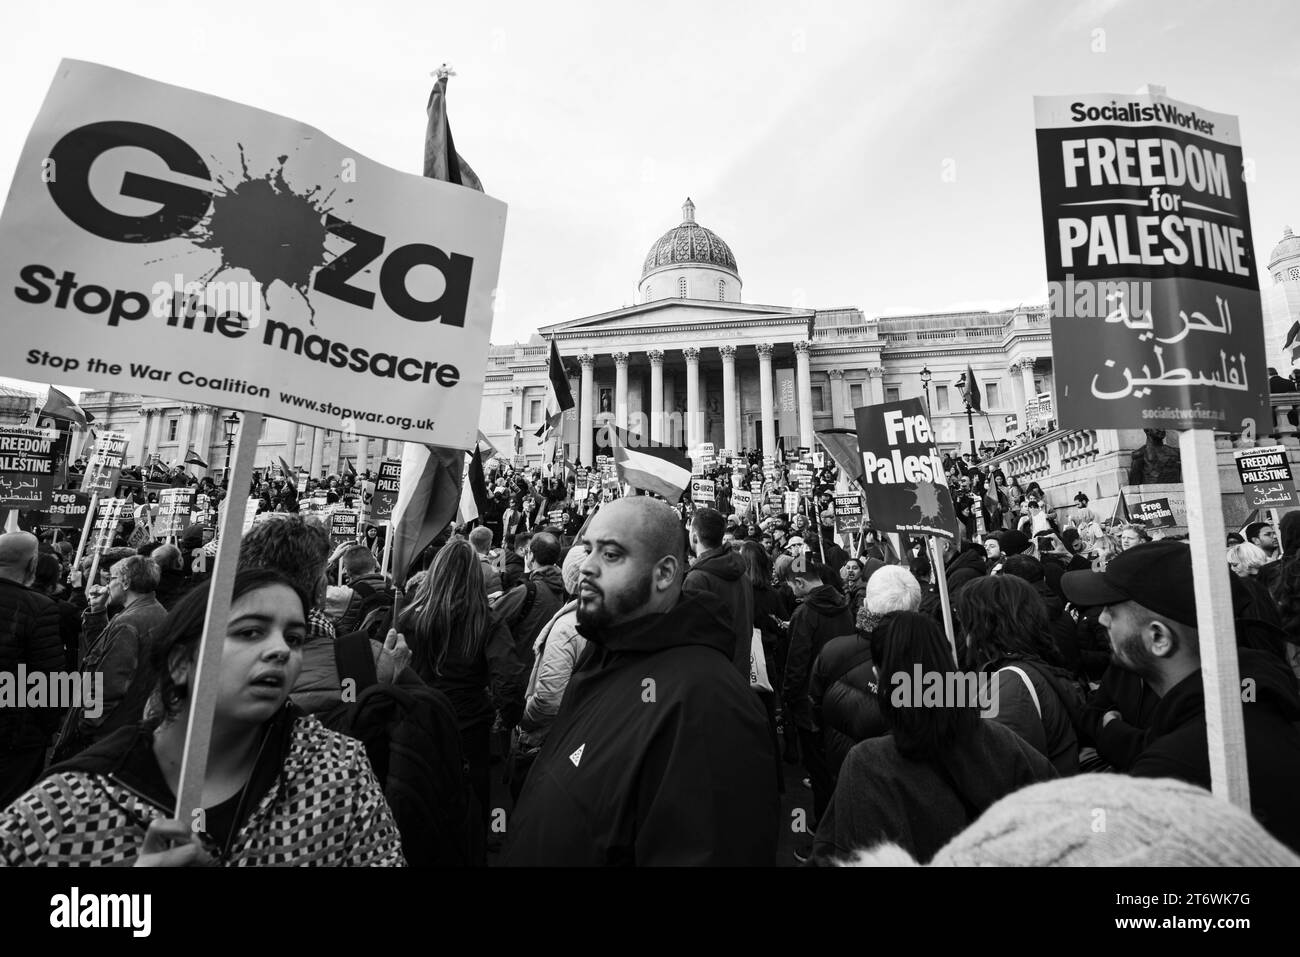 Palästinensische Proteste auf dem Trafalgar Square, London, England. Stockfoto